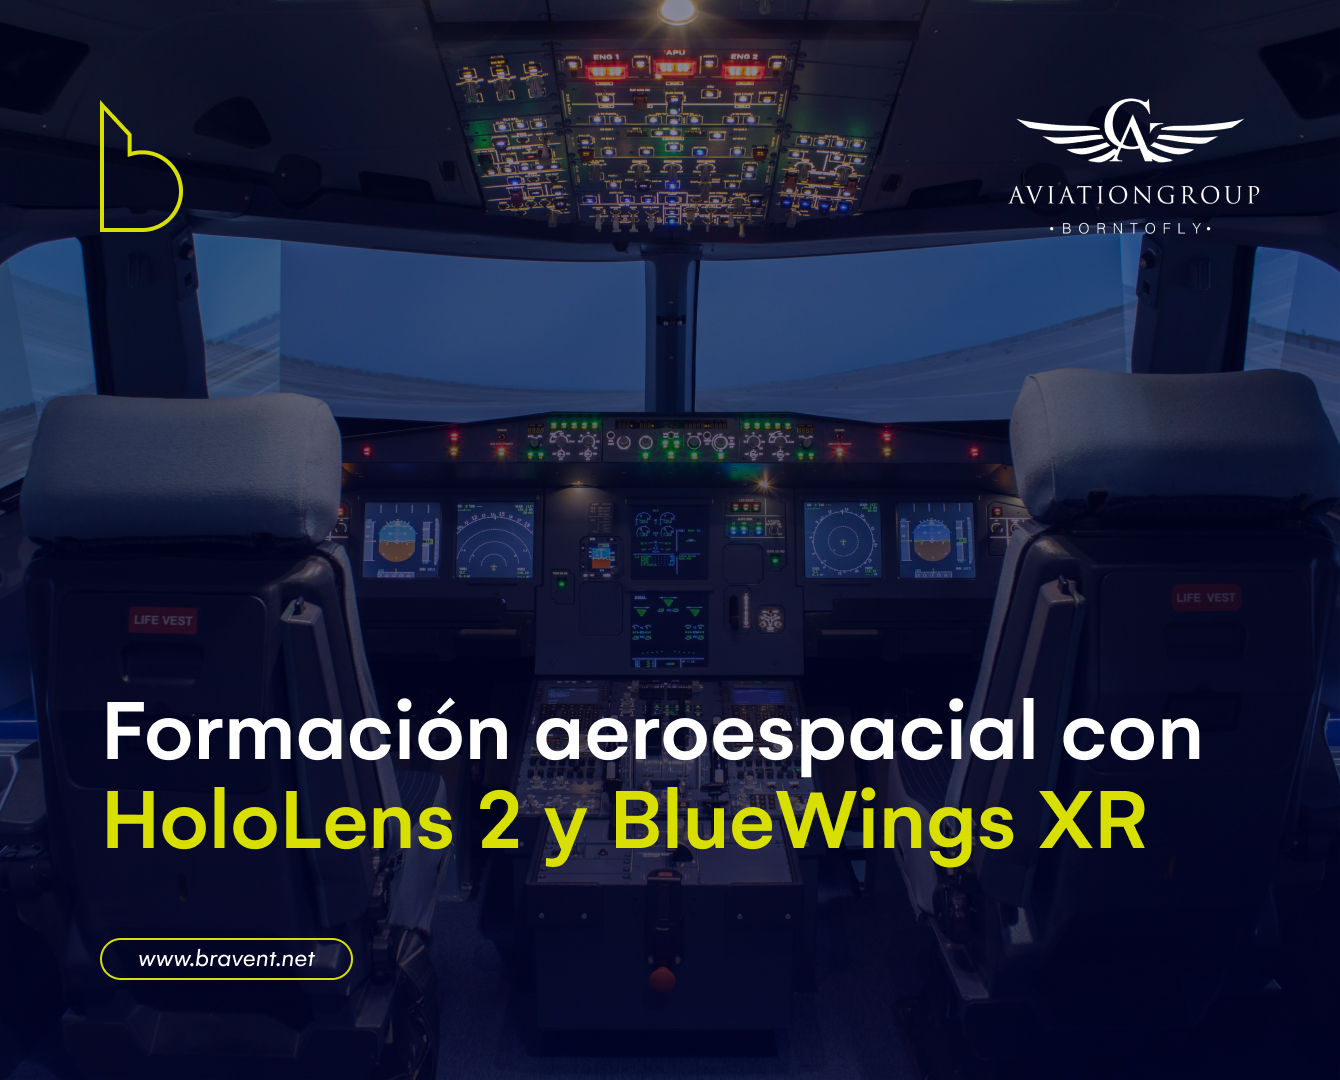 Bravent desarrolla el proyecto BlueWings XR para Aviation Group